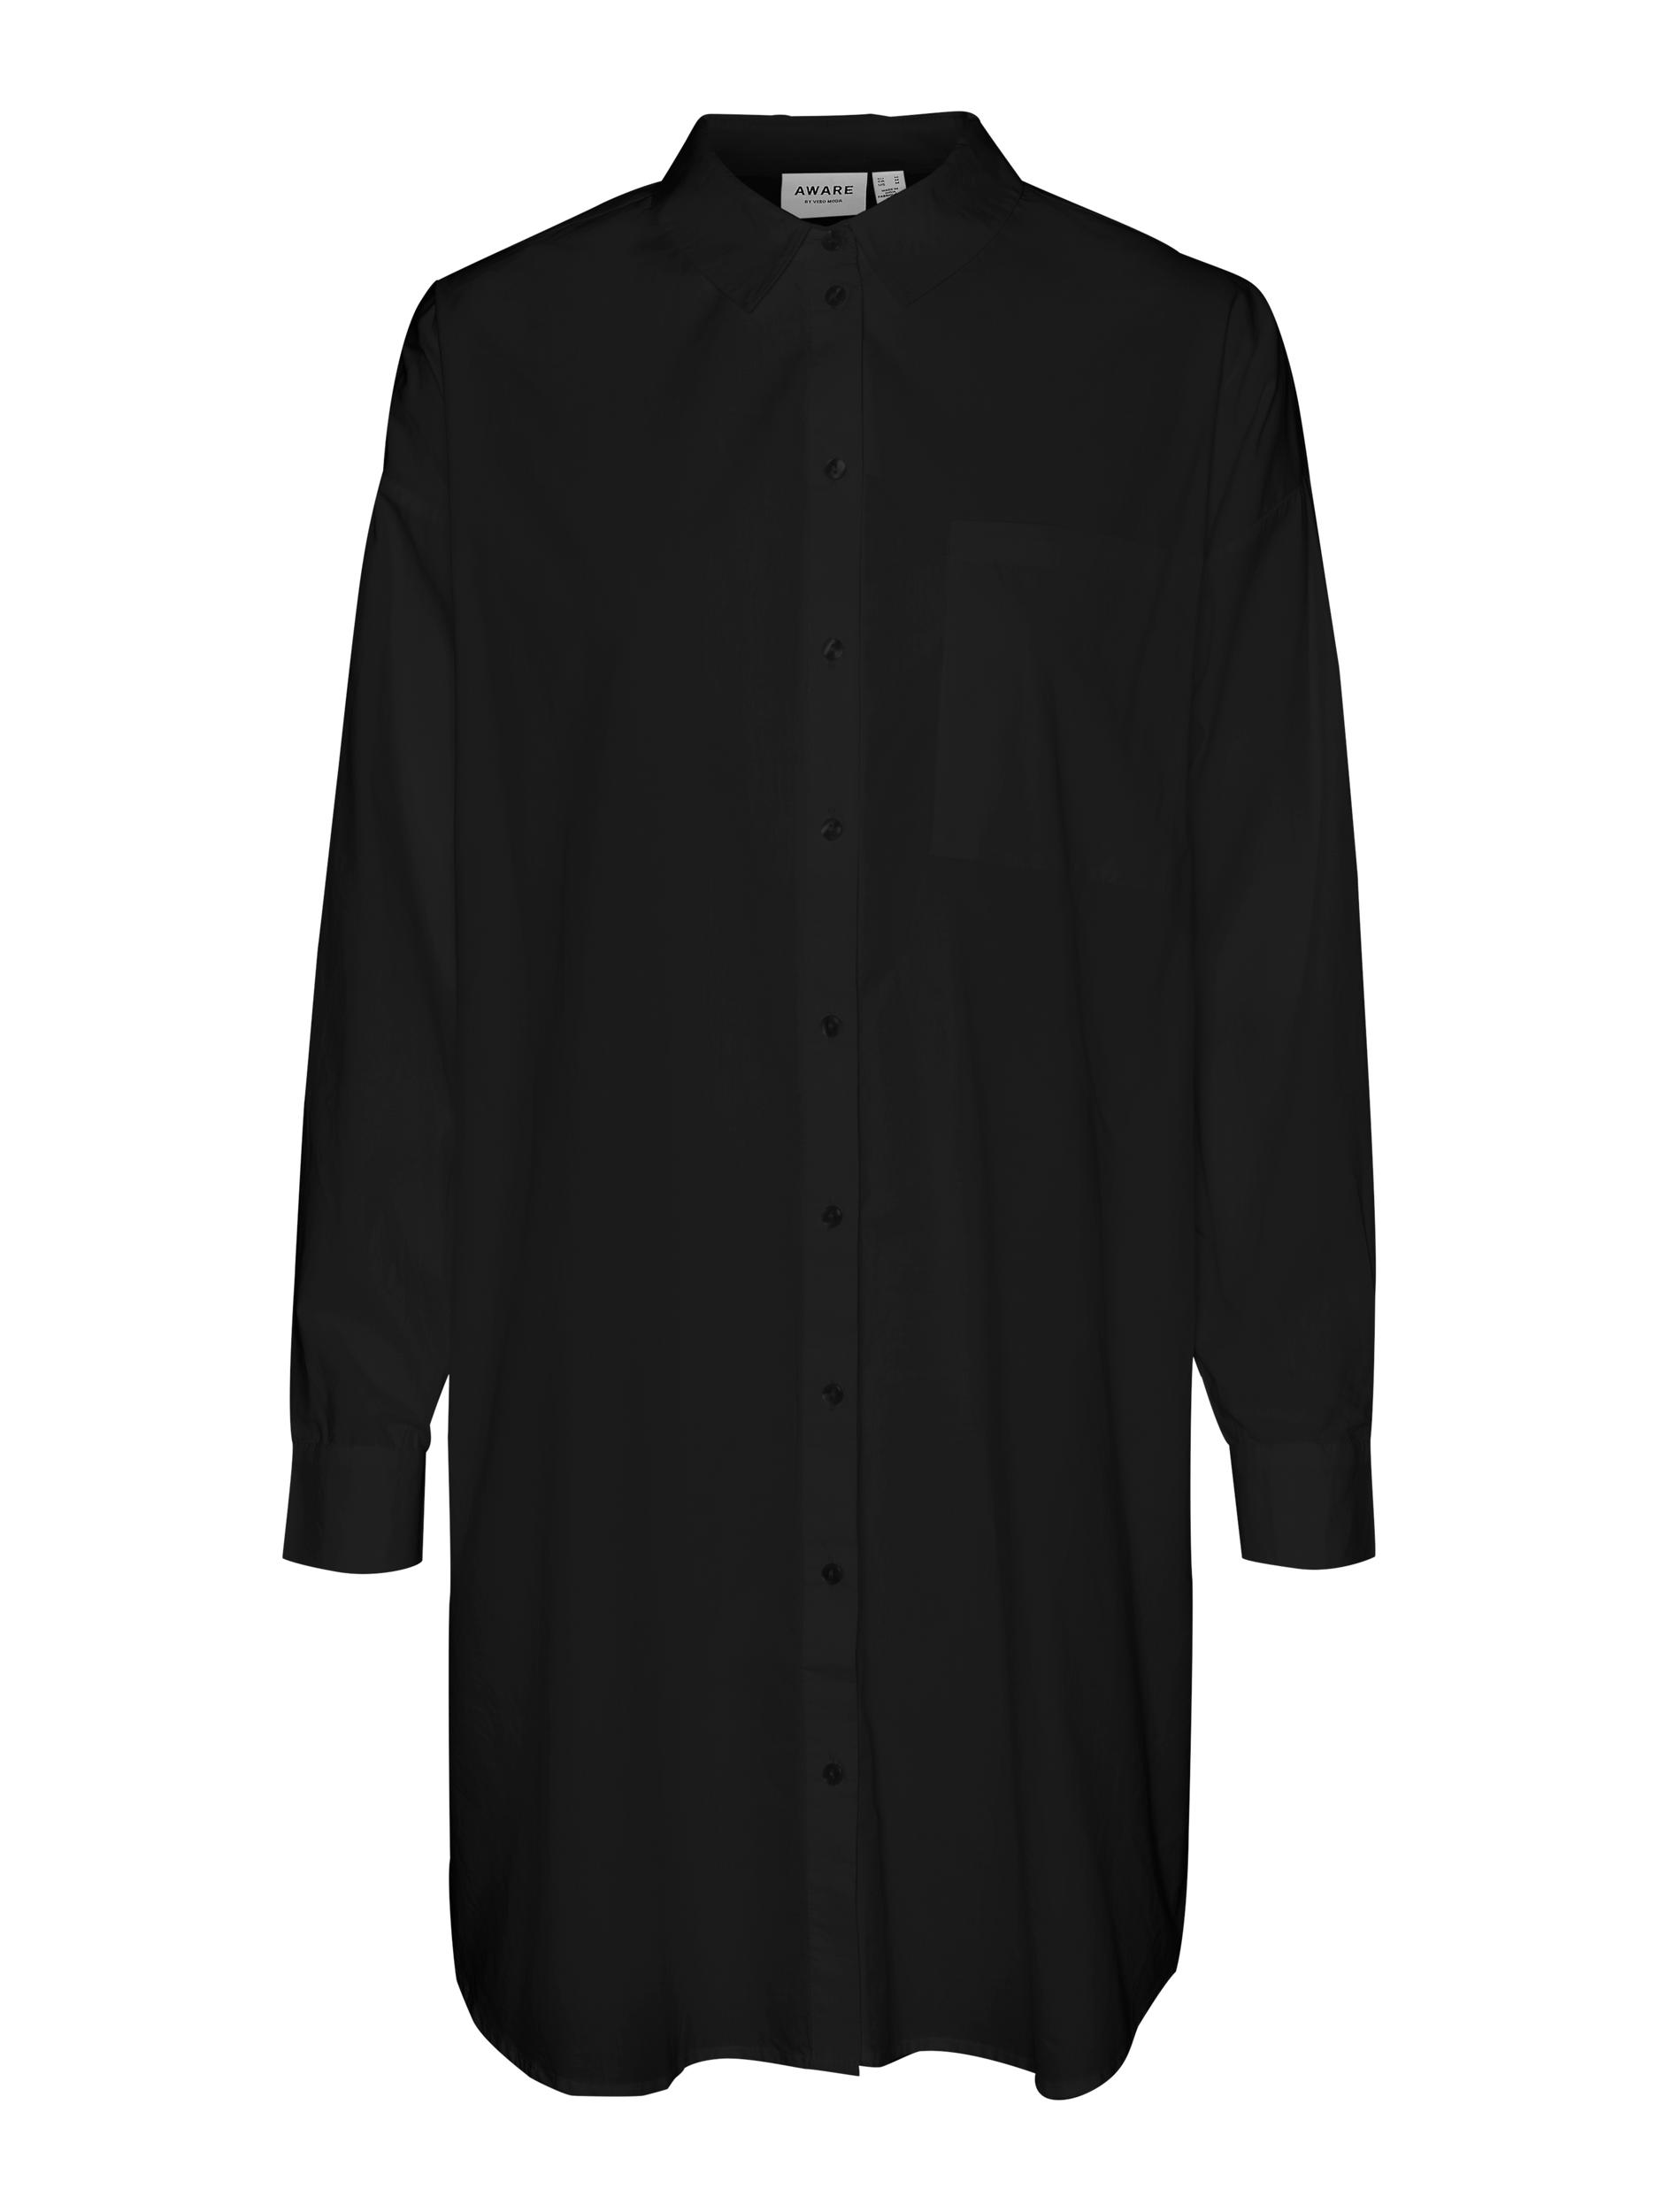 AWARE | Percey oversized shirt, BLACK, large